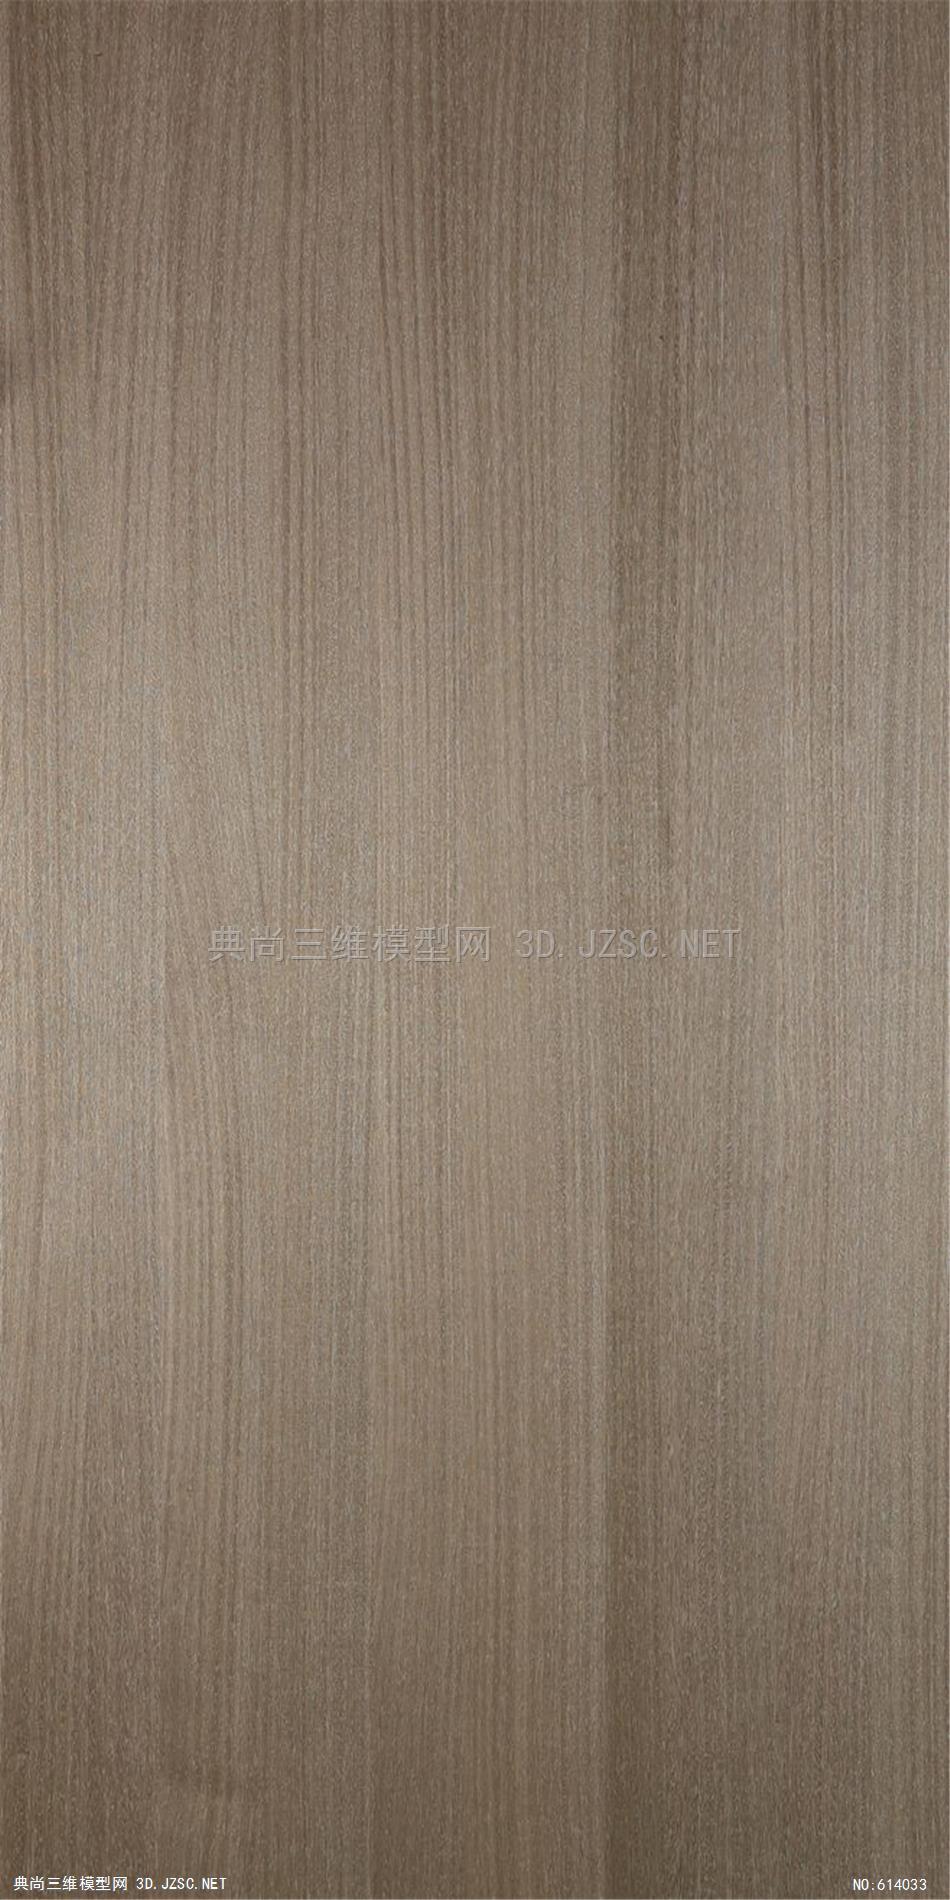 木饰面 木纹 木材  高清材质贴图 (221)